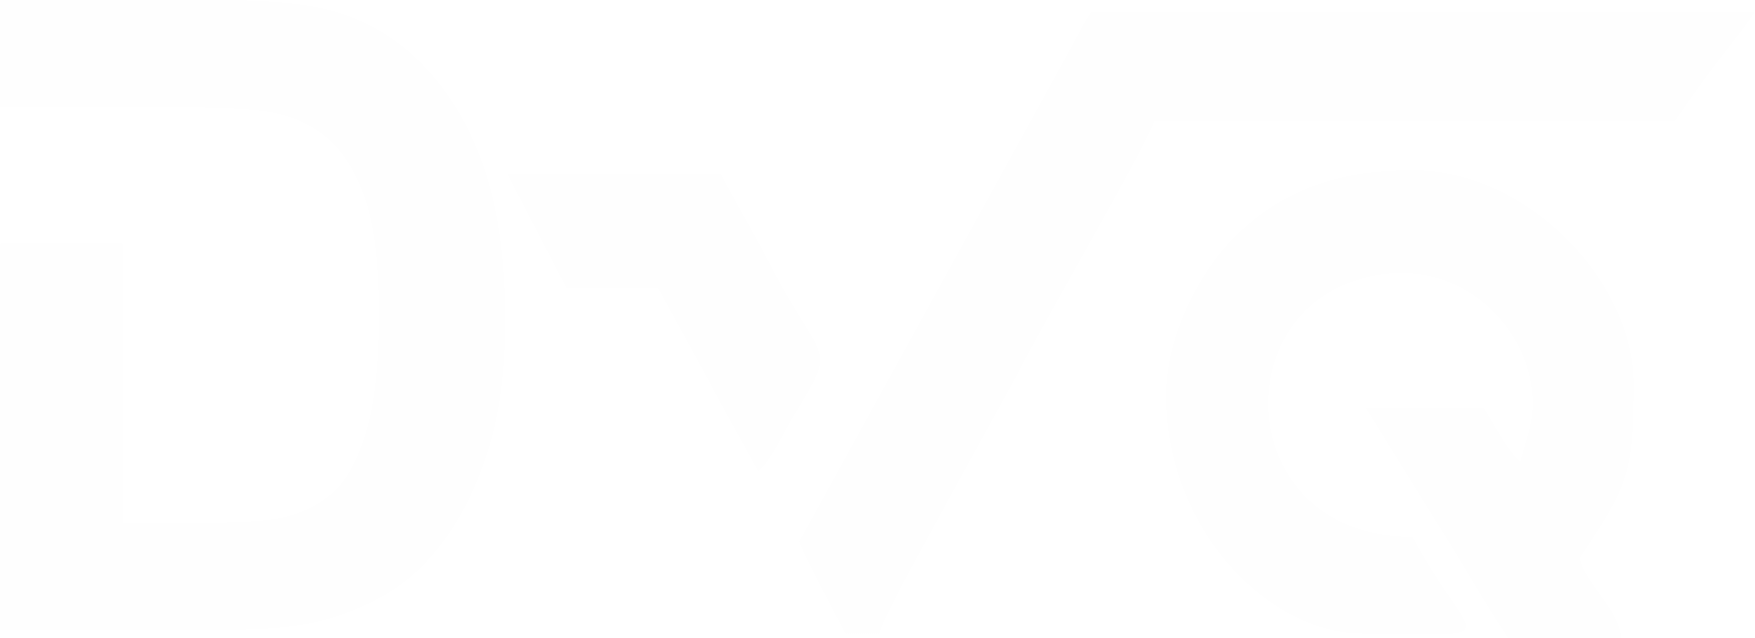 DVQ-dynamo-led-logo